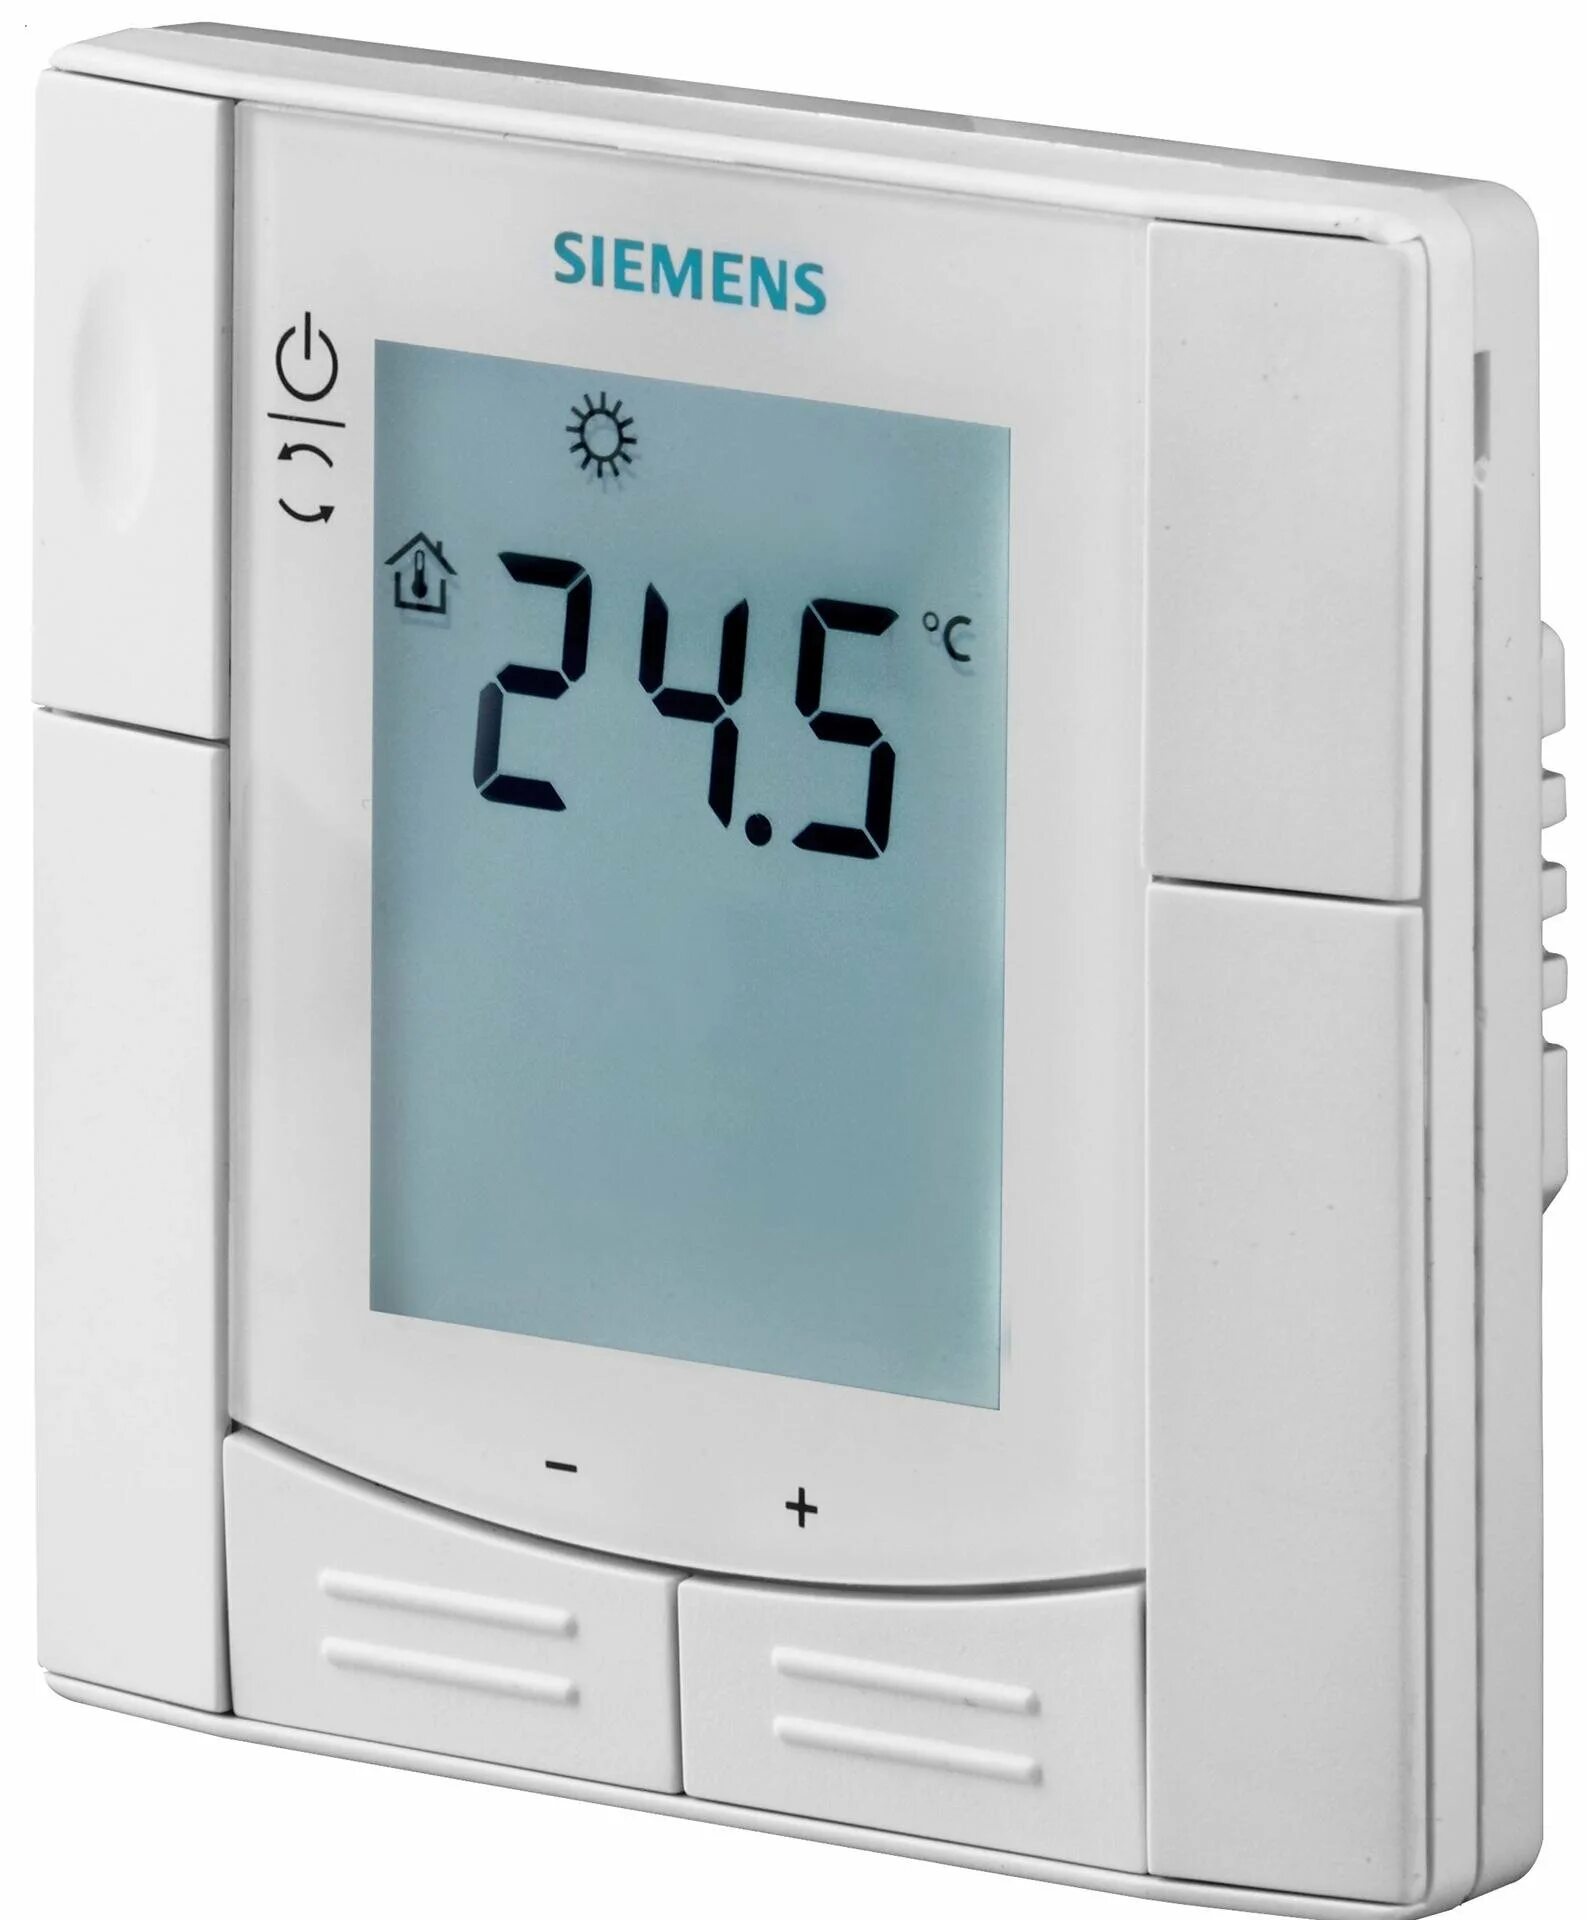 Термостат Siemens RDF 310.2. Контроллер комнатной температуры Siemens RDF 310.2. Rdf600 комнатный термостат. Rde100 комнатный термостат.